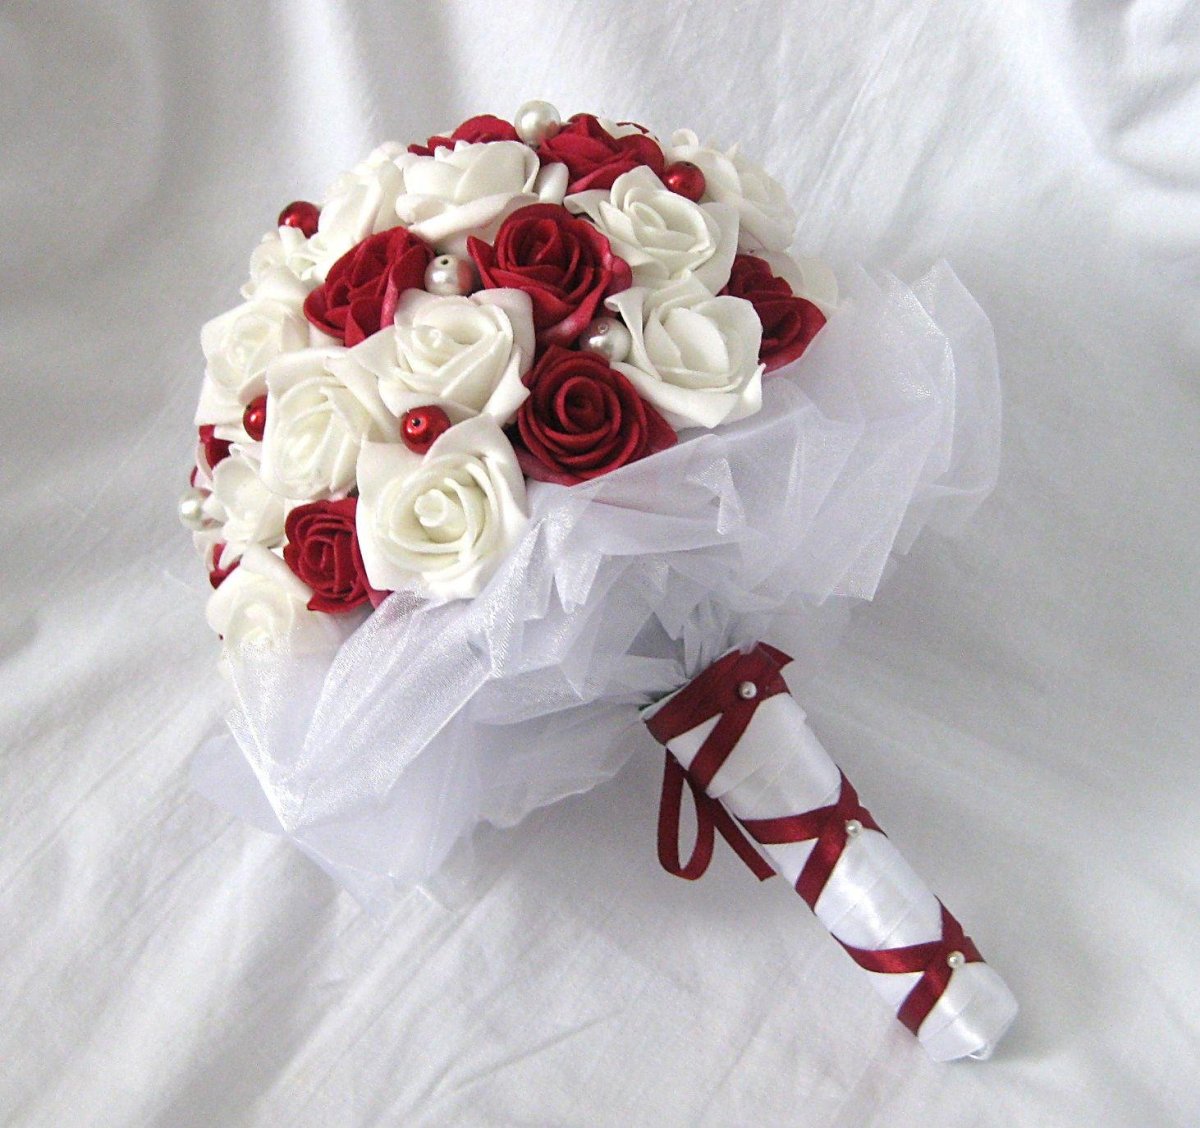 Бело розовый красный букет. Свадебный букет. Свадебный букет невесты из красных и белых роз. Свадебный букет невесты красный с белым. Свадебный букет красно белый.